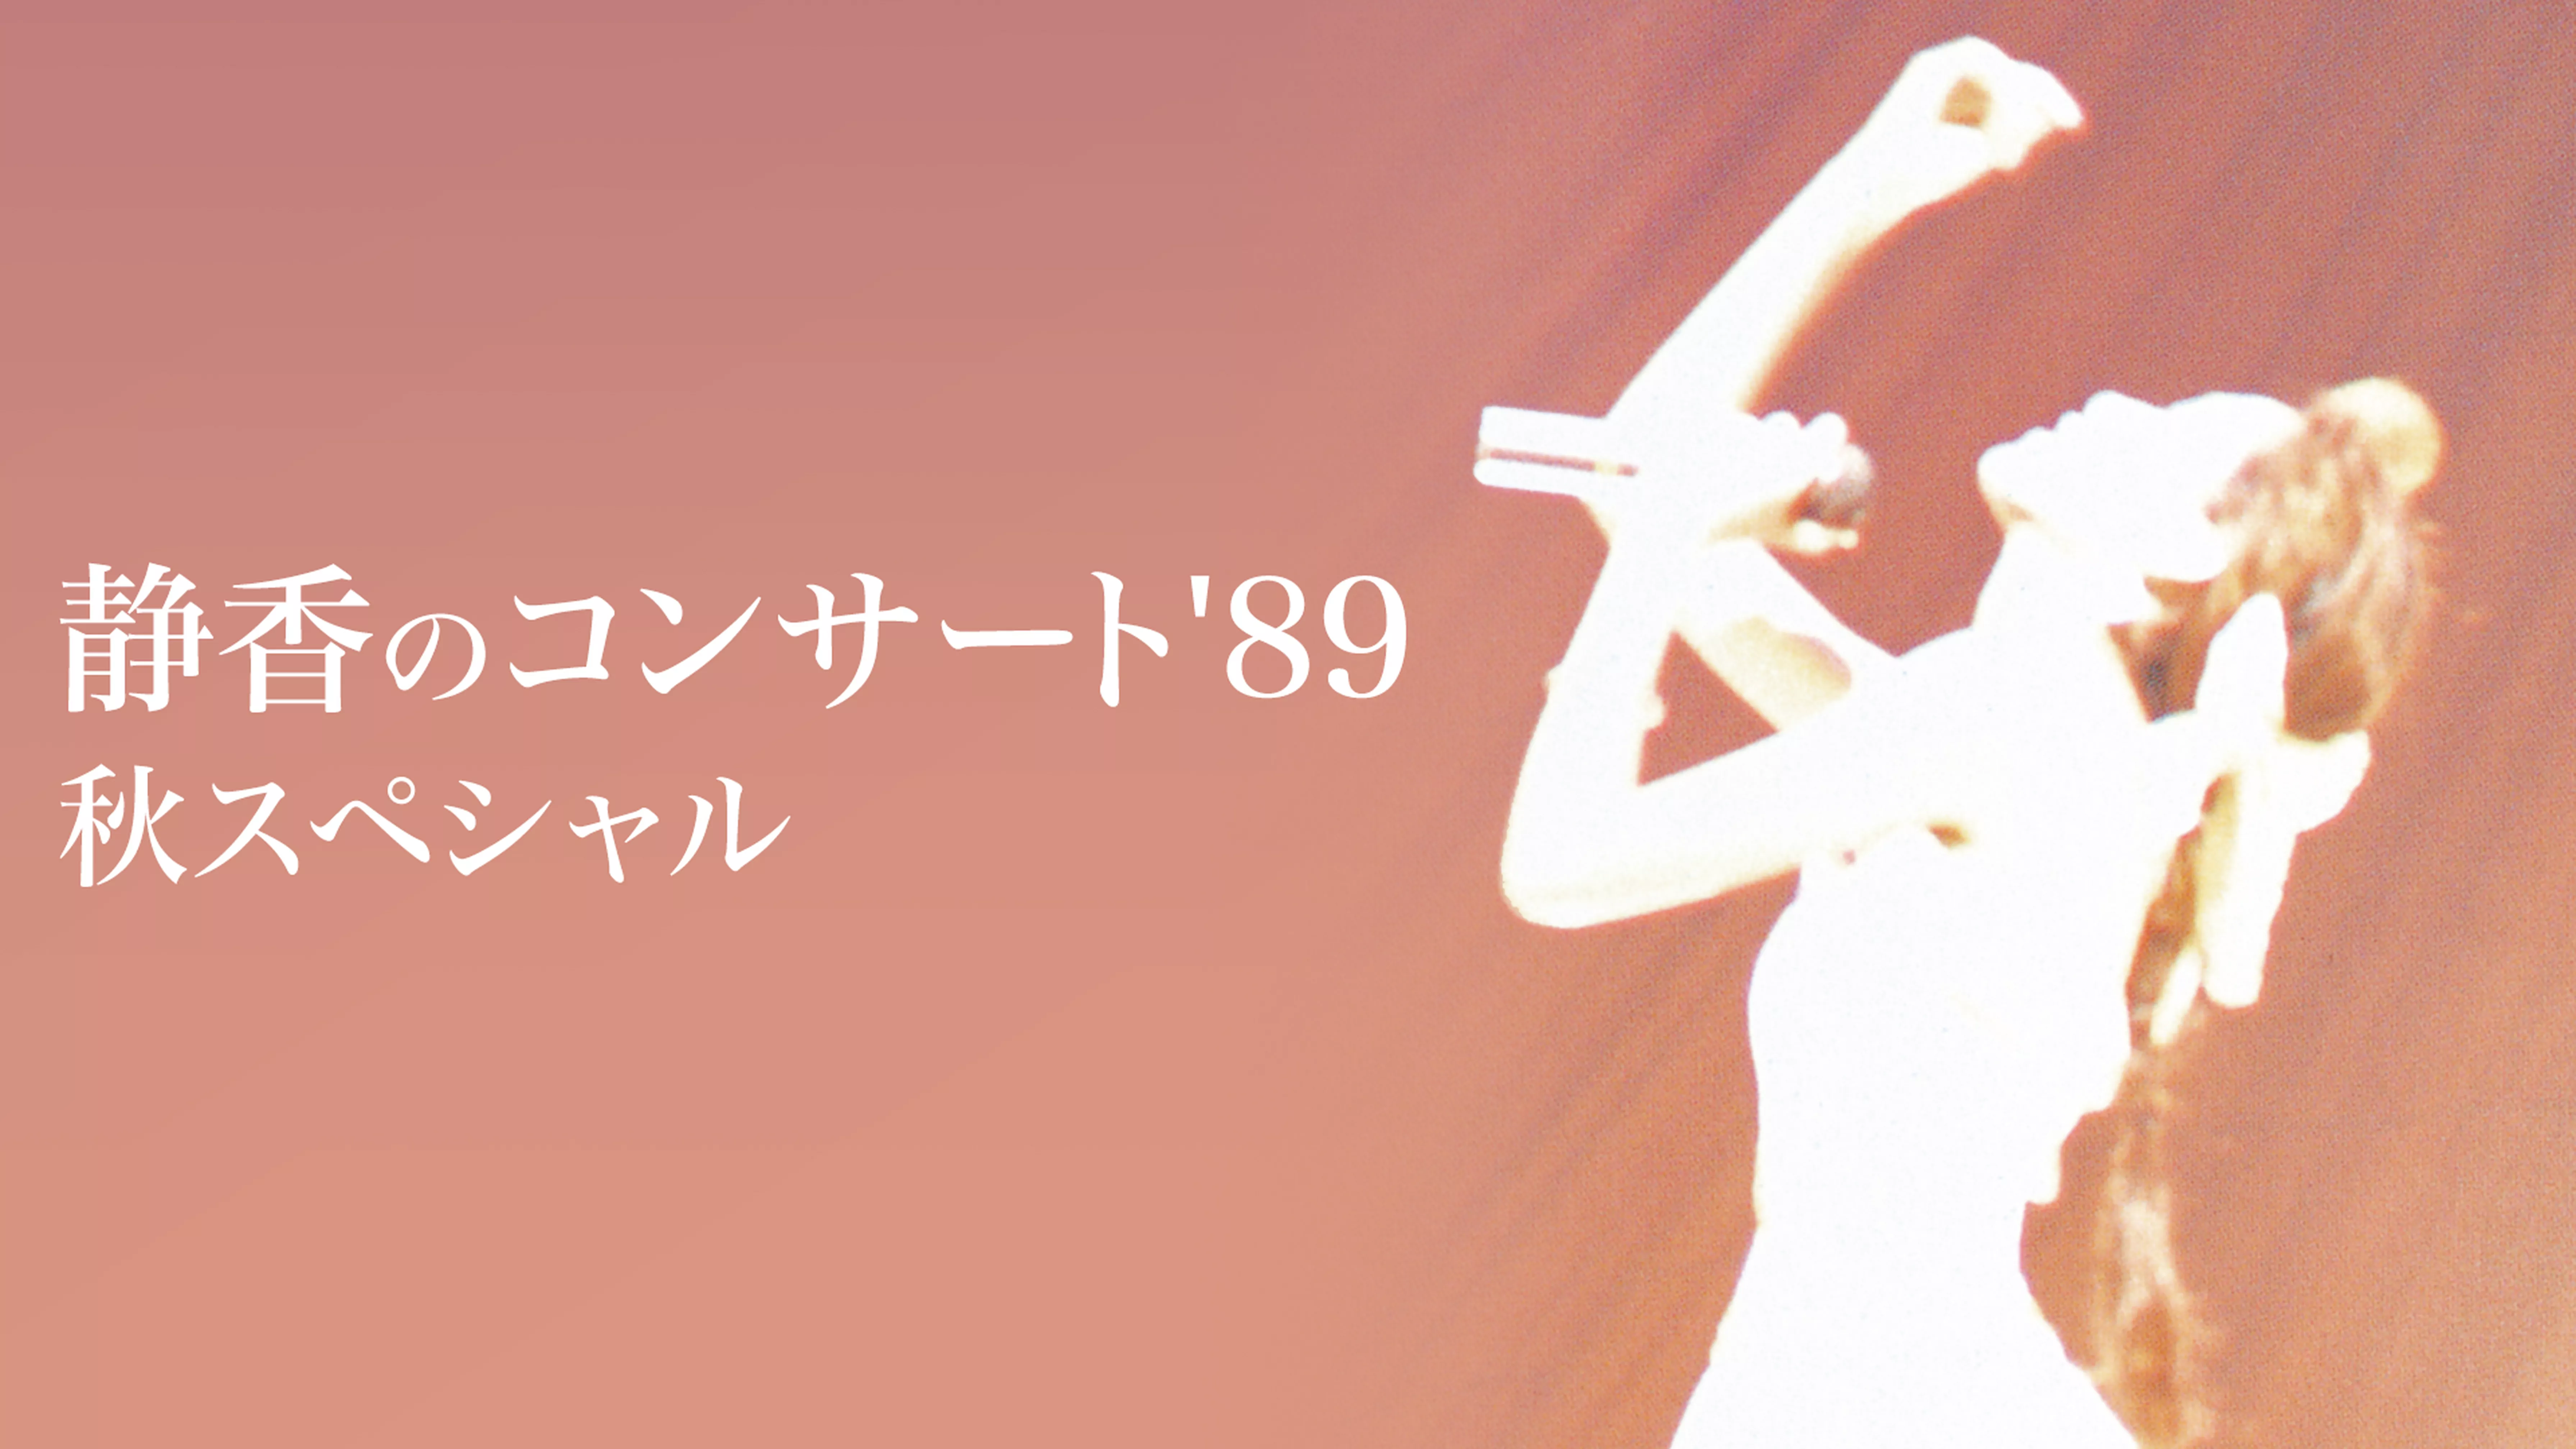 工藤 静香 I'm not Concert Tour 1998(音楽・アイドル / 1998) - 動画